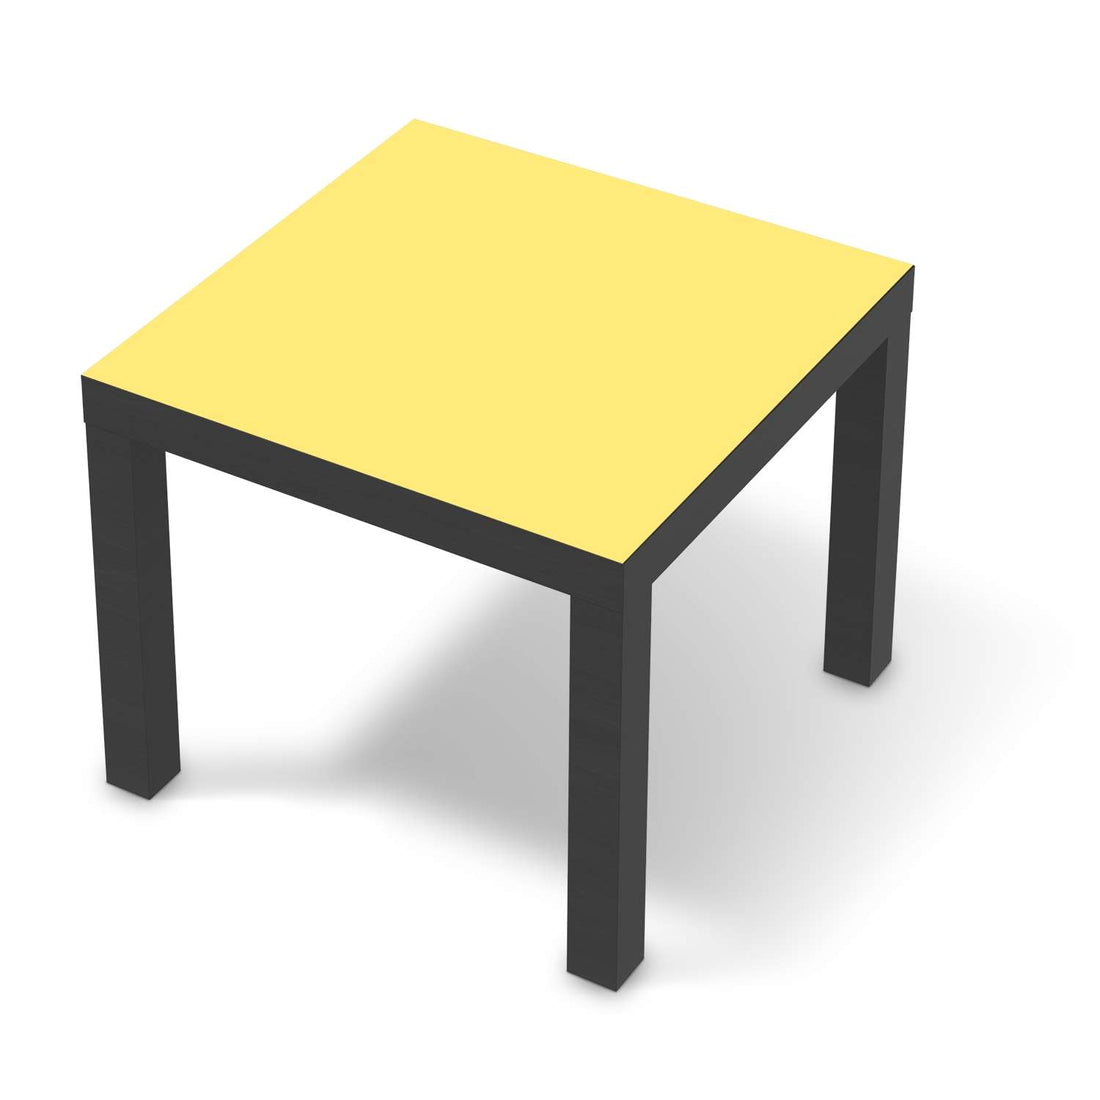 Möbelfolie Gelb Light - IKEA Lack Tisch 55x55 cm - schwarz